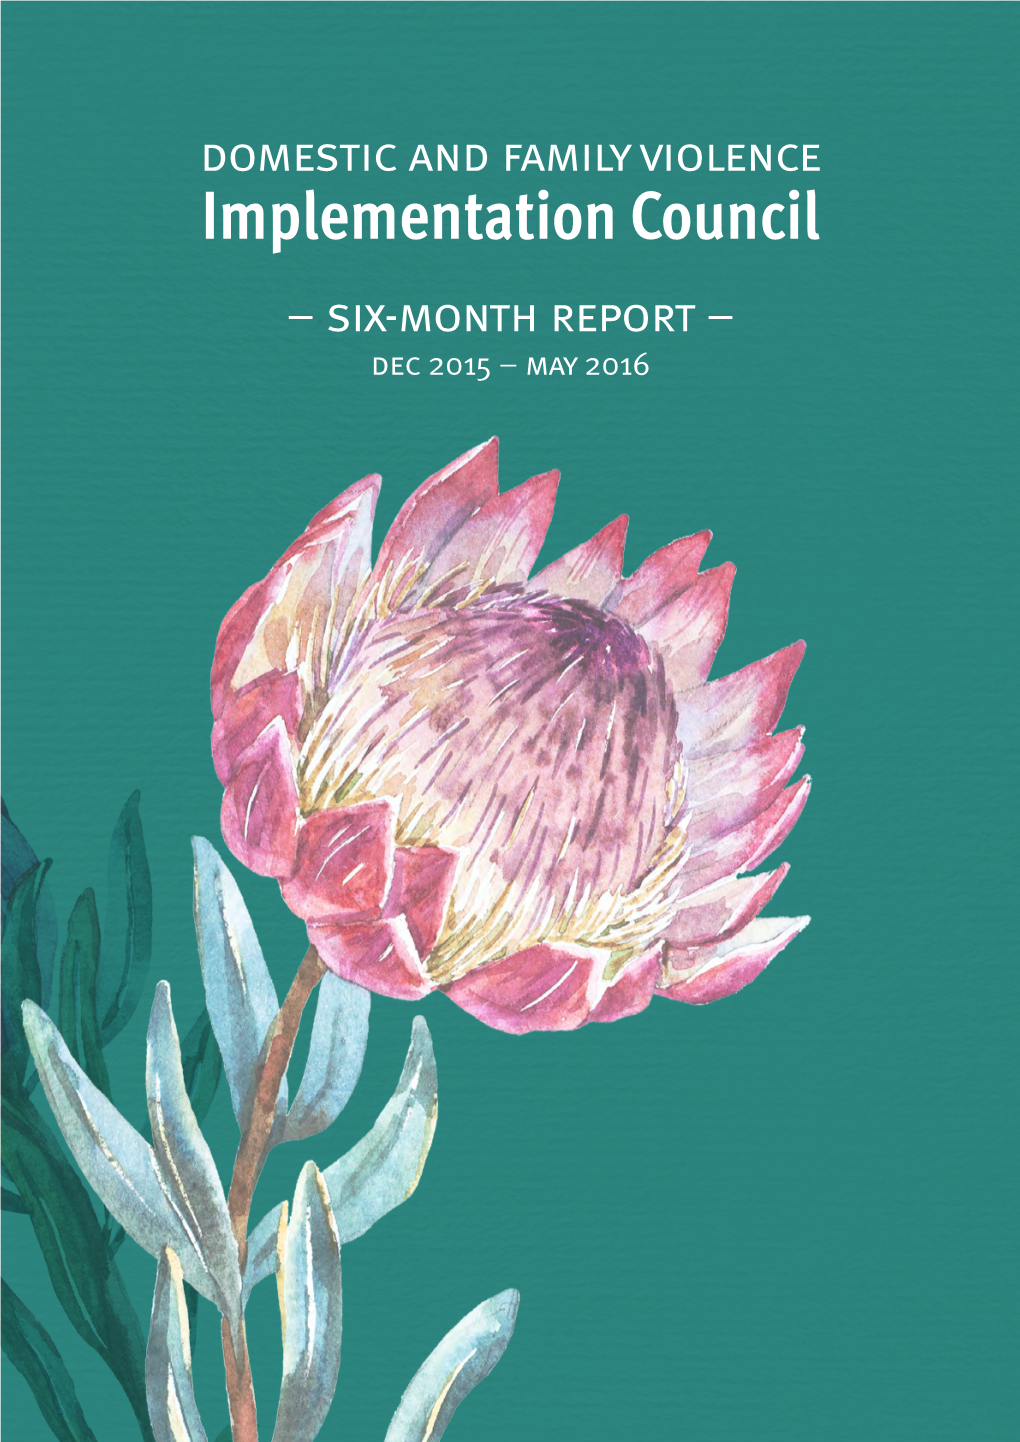 DFV Implementation Council Six-Month Report